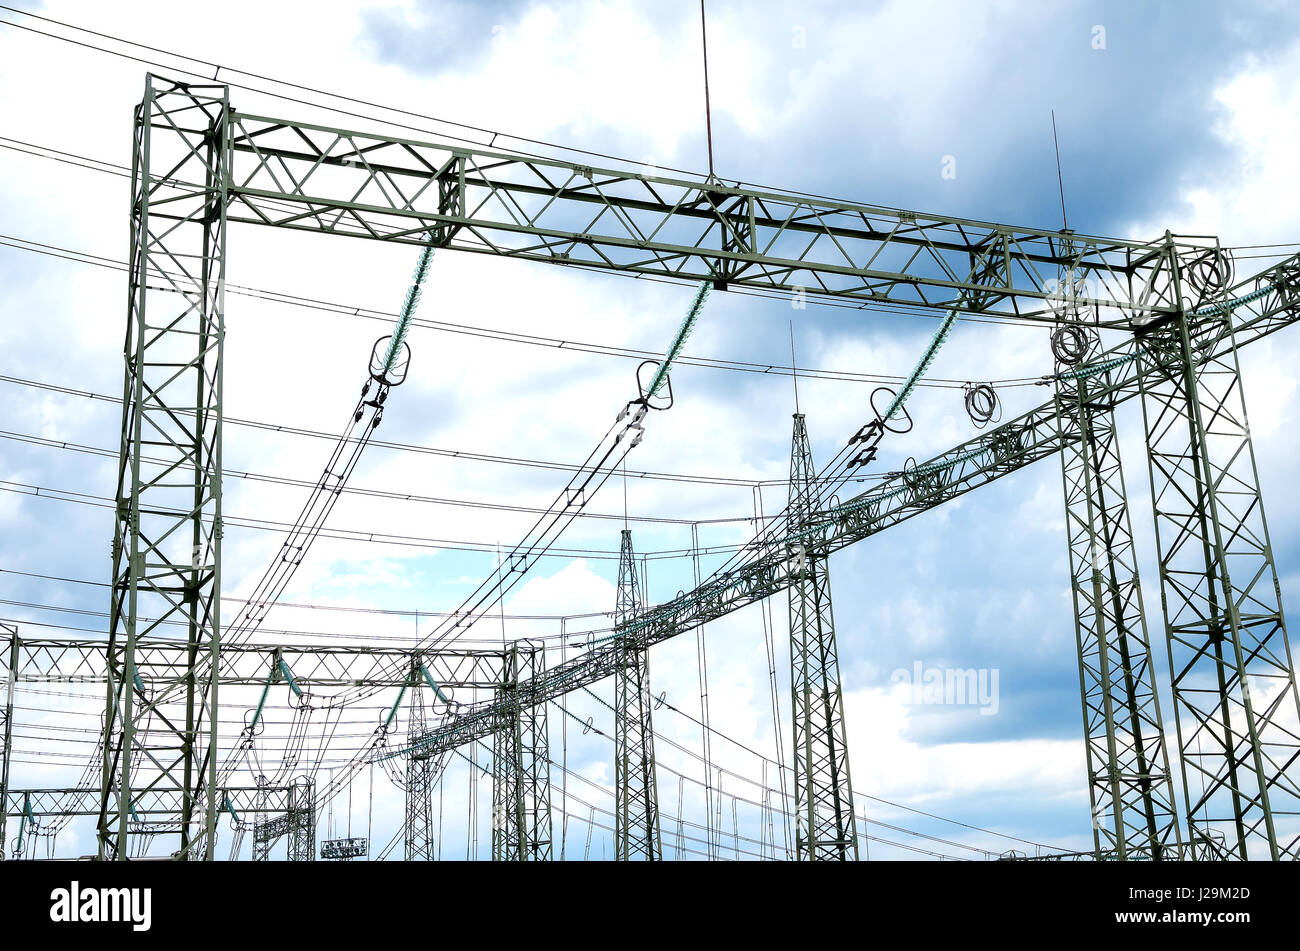 La distribution de l'électricité. Éléments du pylône électrique - isolants, câbles et fixations Banque D'Images